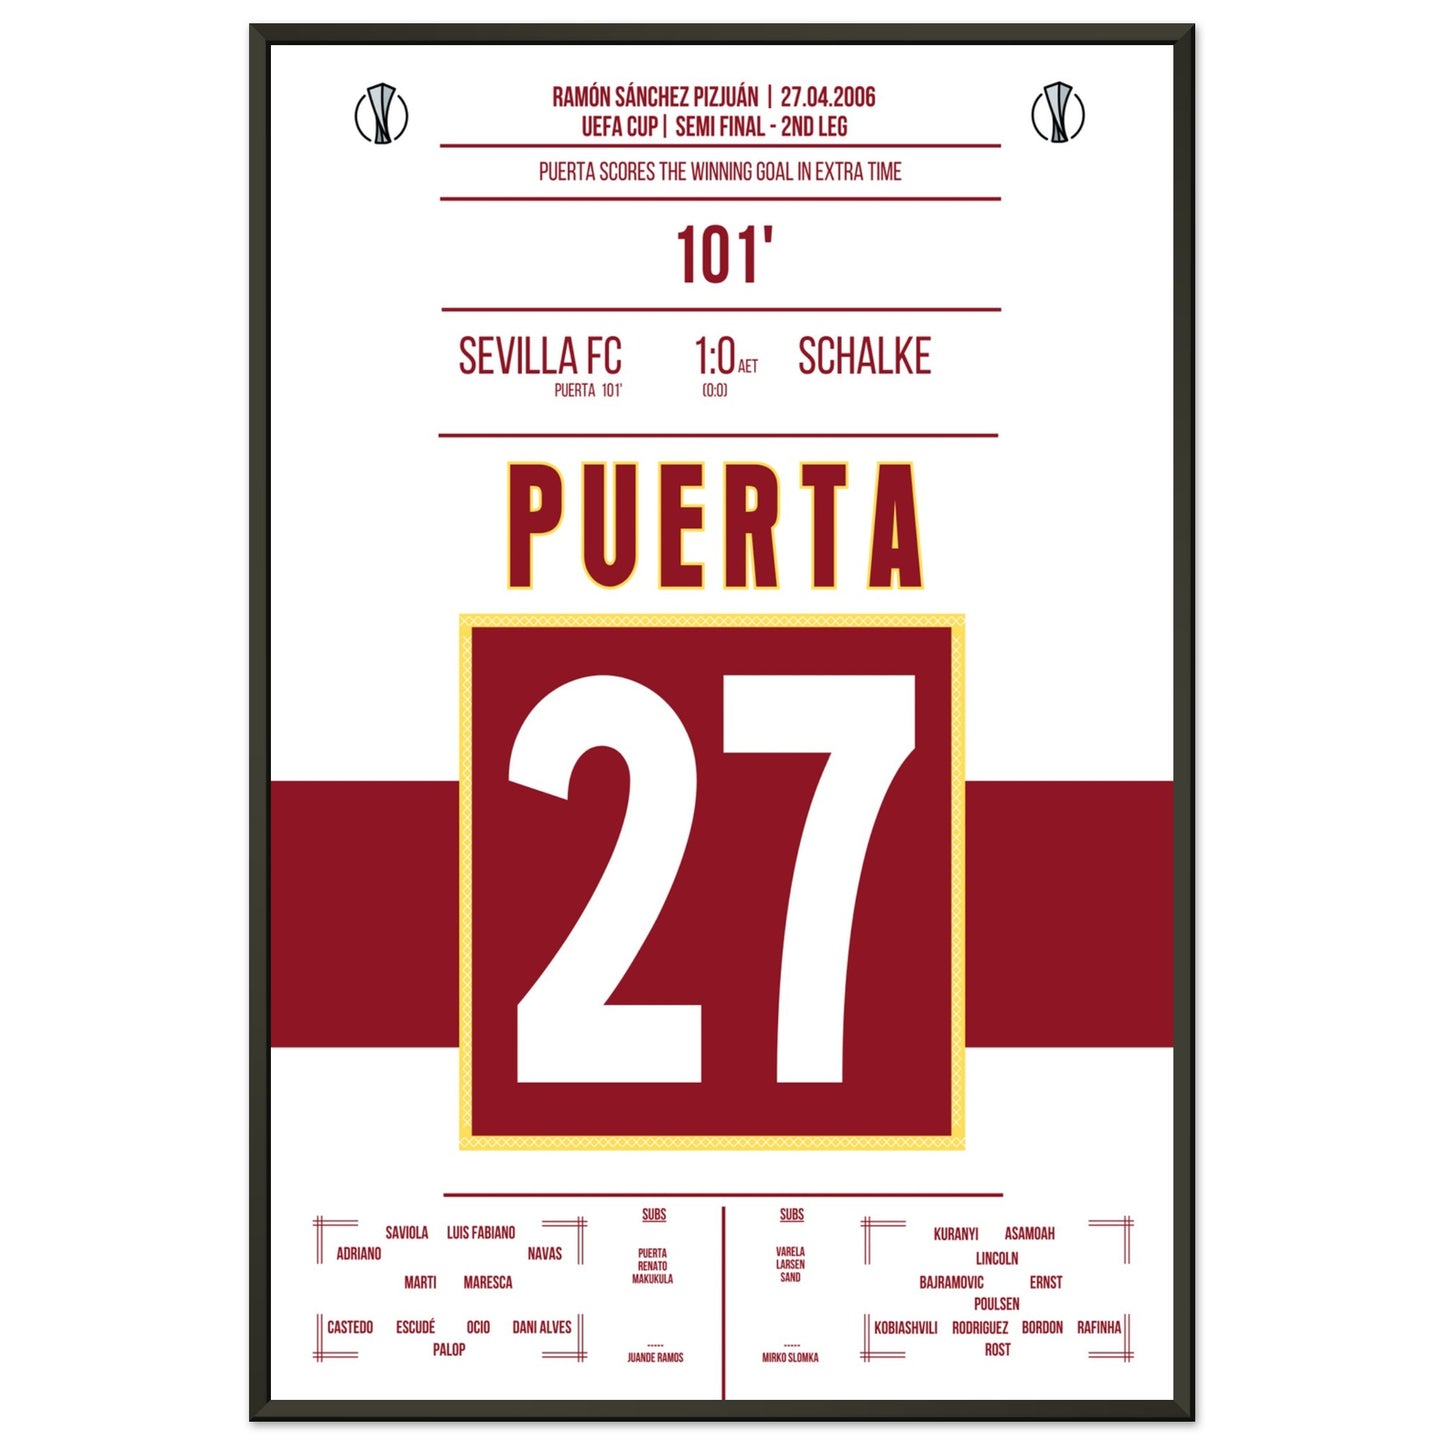 Puerta schießt Sevilla ins Uefa Cup Finale 2006